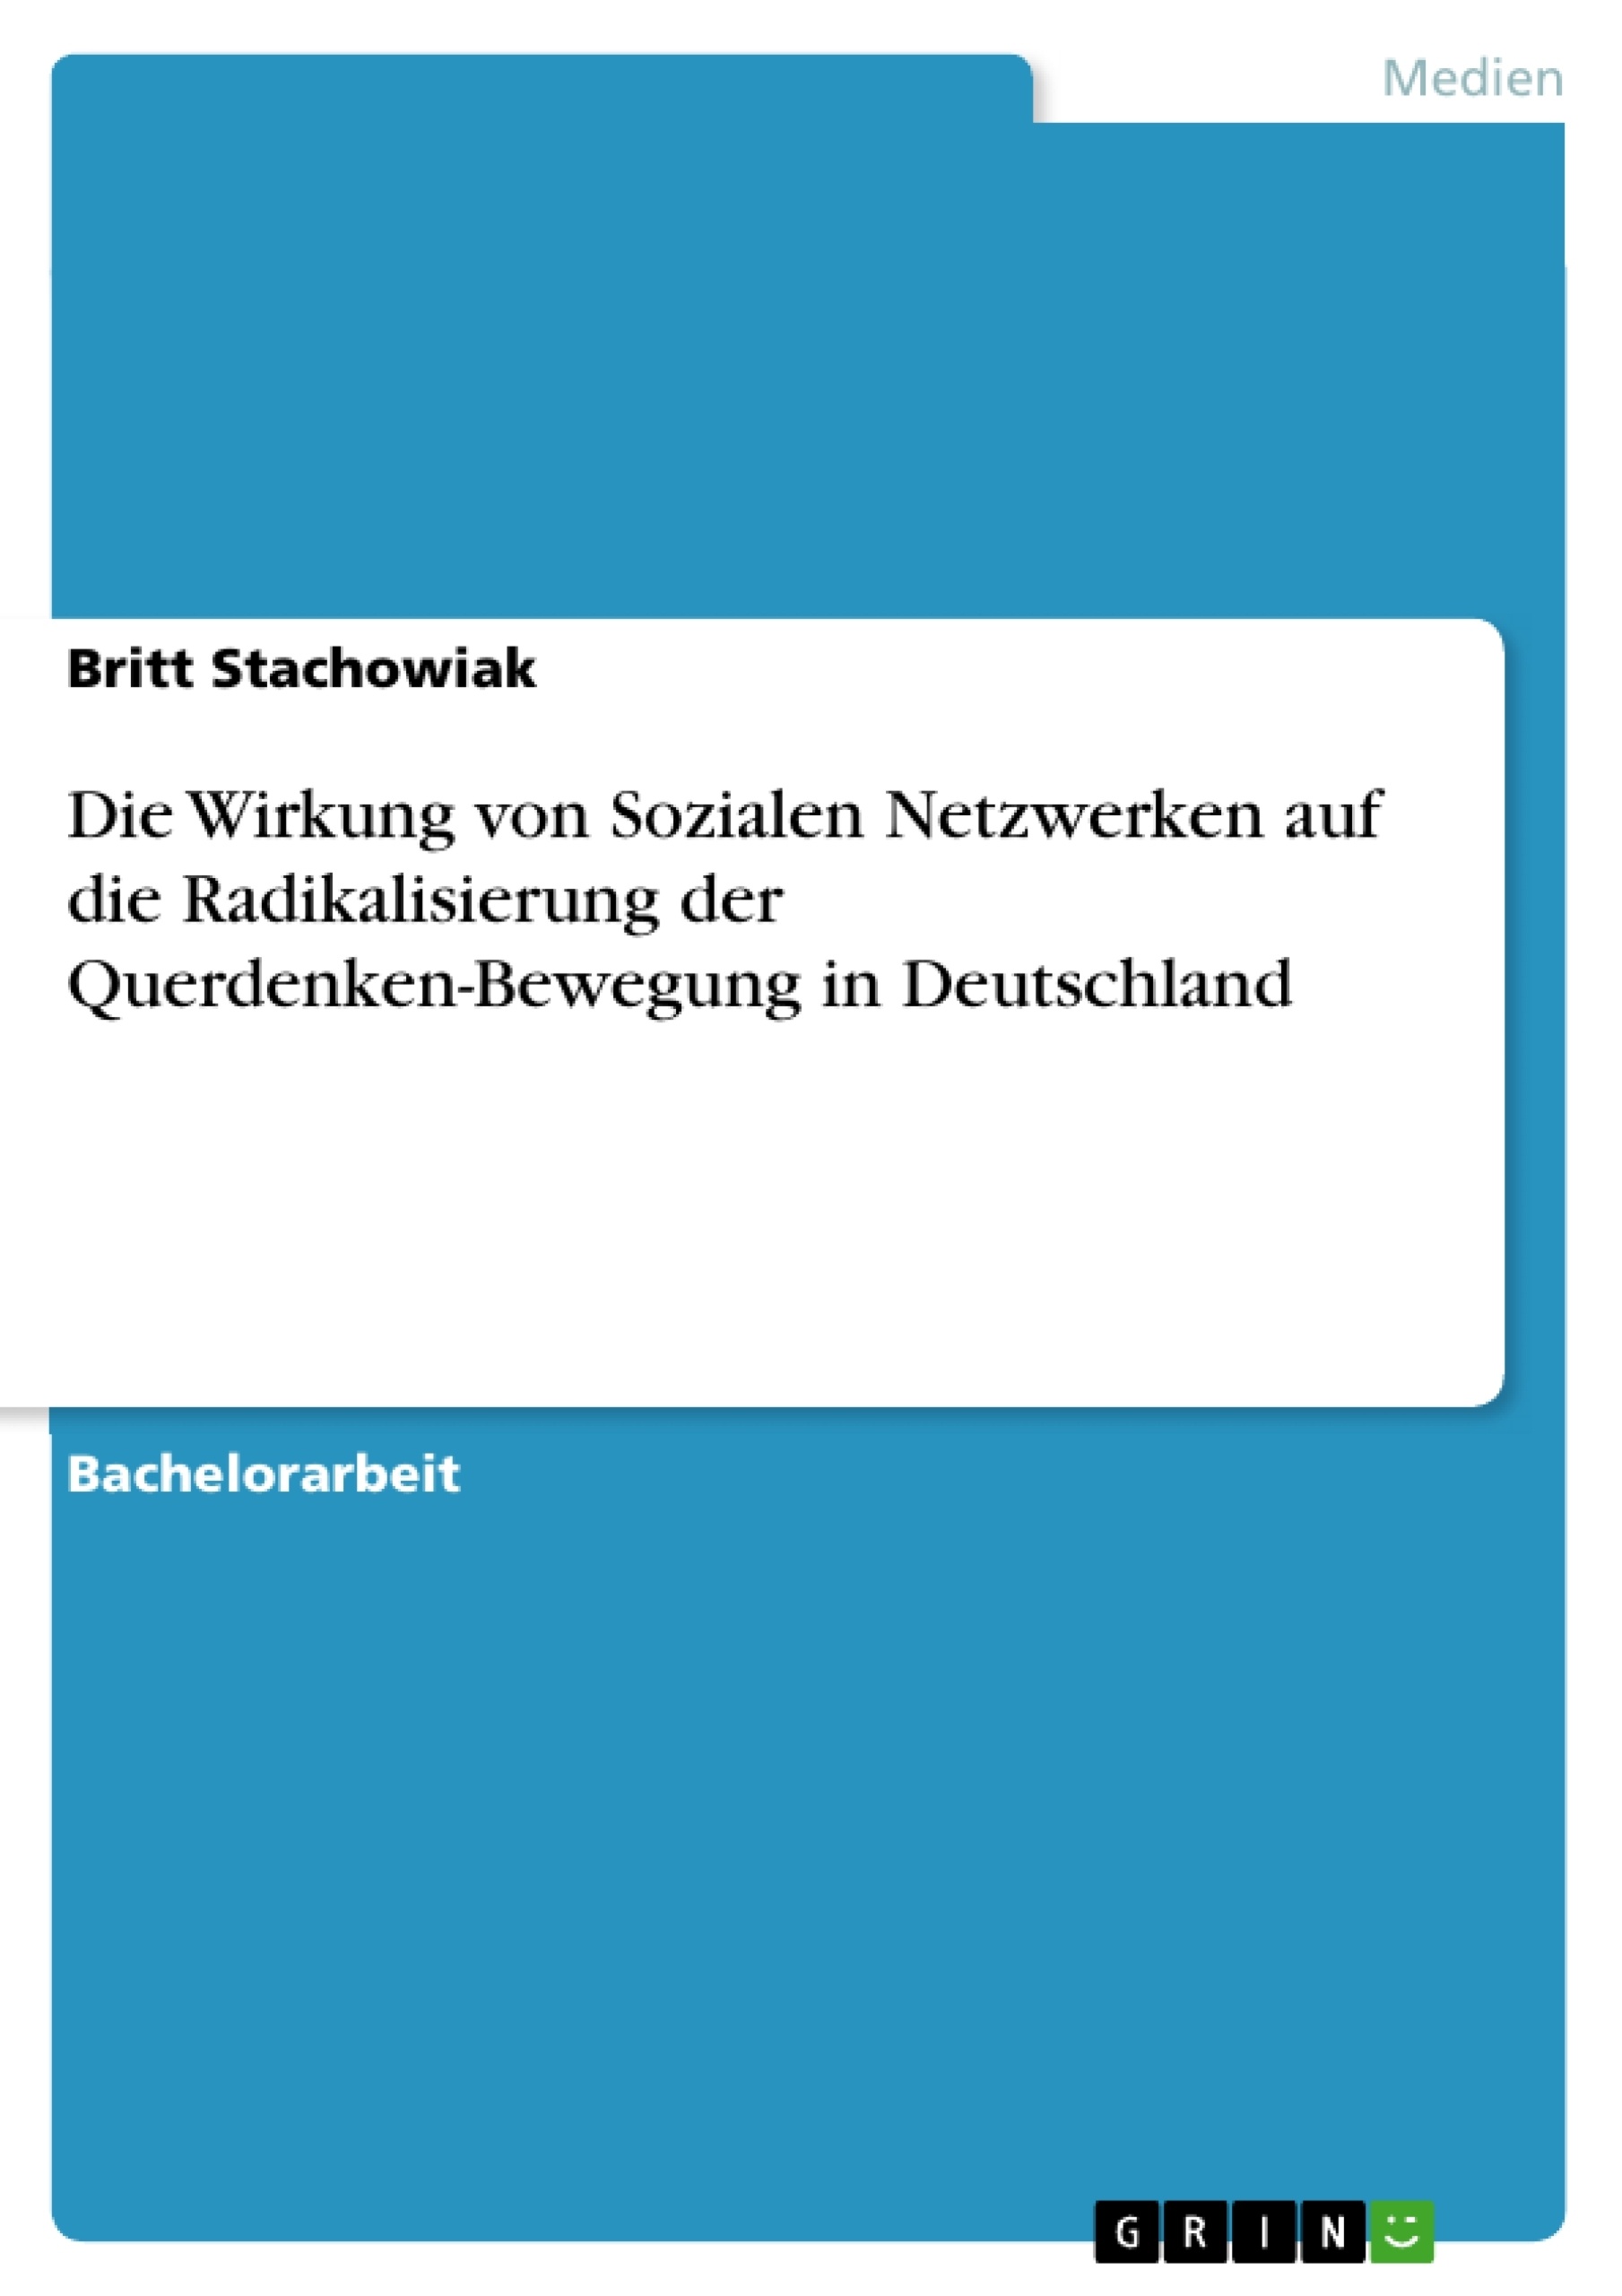 Titel: Die Wirkung von Sozialen Netzwerken auf die Radikalisierung der Querdenken-Bewegung in Deutschland